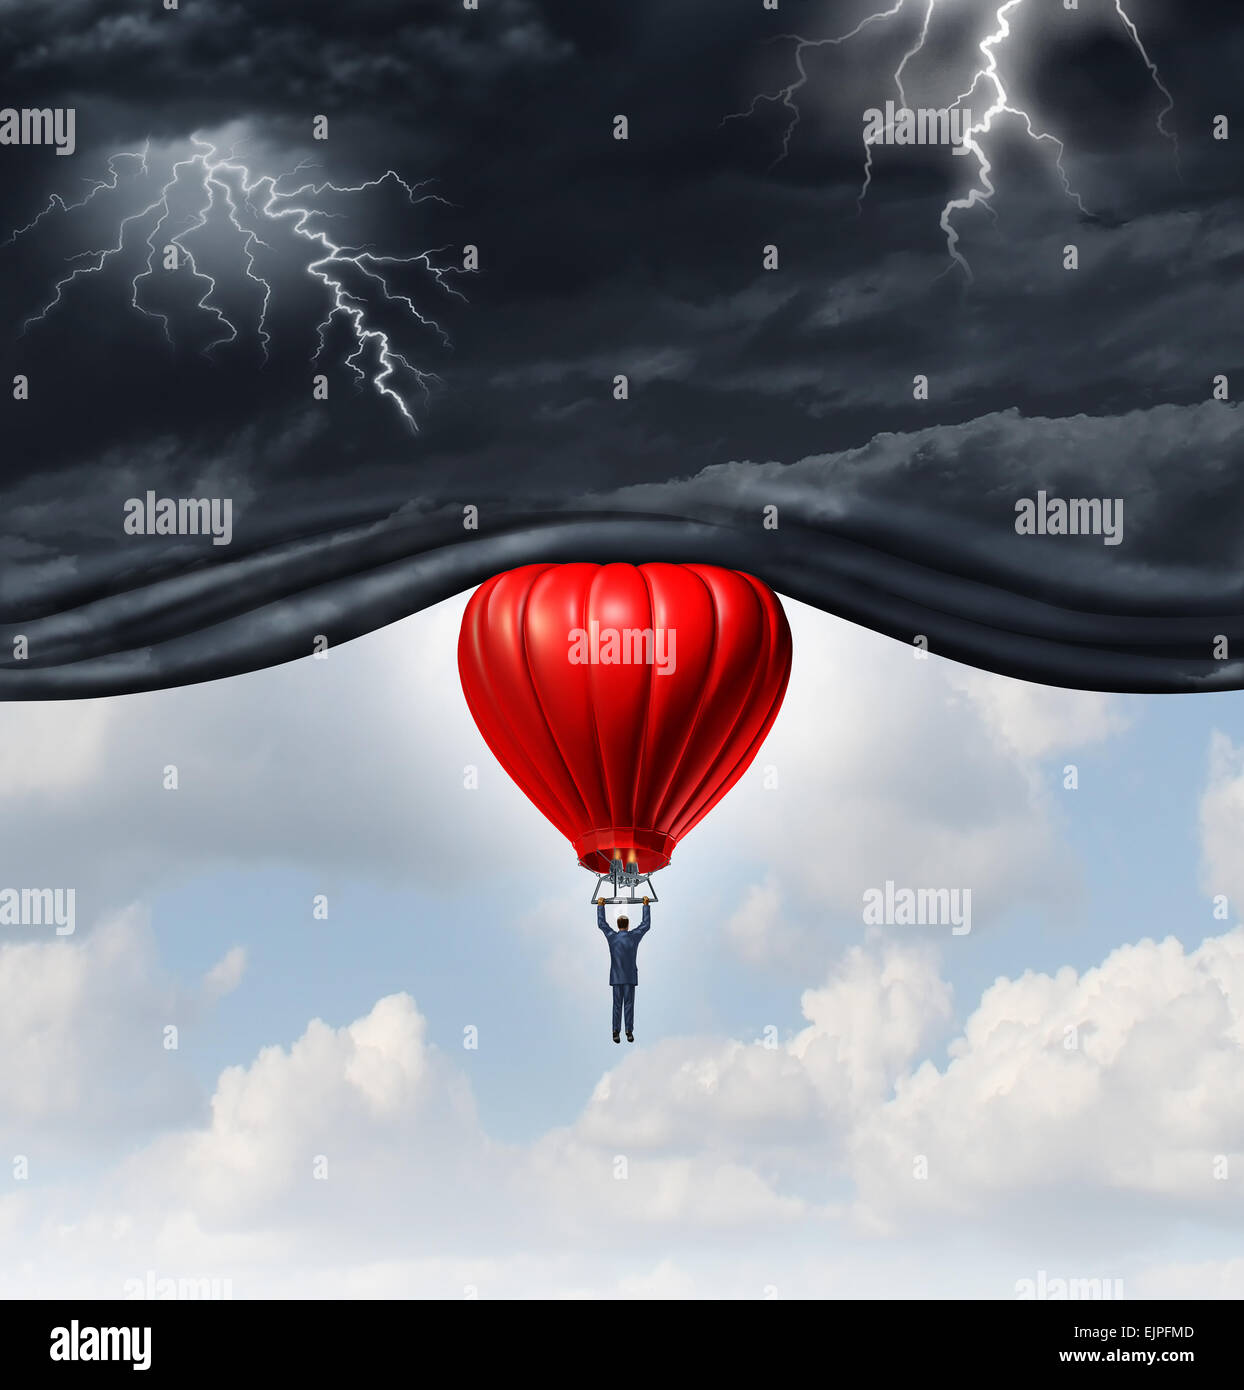 Positiver Ausblick und Erholung Konzept als Person und Geschäftsmann, die Aufhebung der gefährlicheren Dunkelheit stürmischen roten Heißluftballon fahren Stockfoto